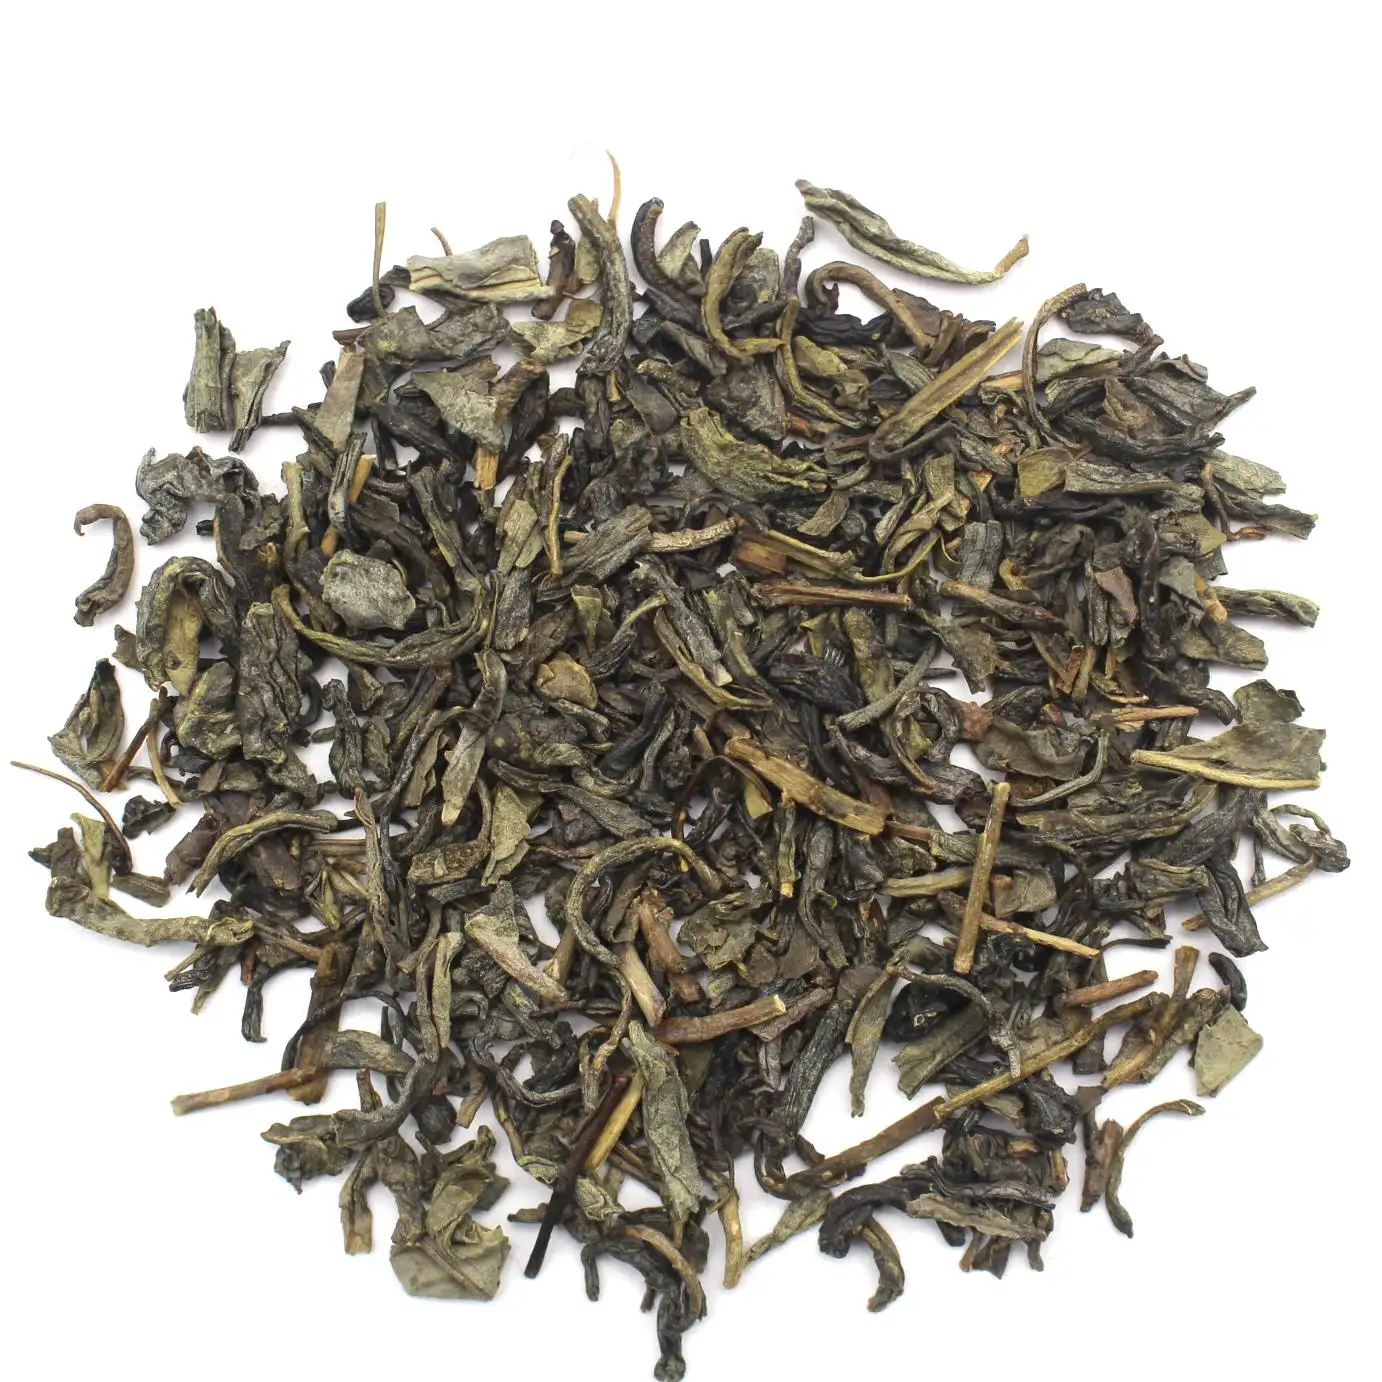 Chinesischer Hersteller Günstige Dunkelgrüne Lose blatt Antioxidans Grüner Tee